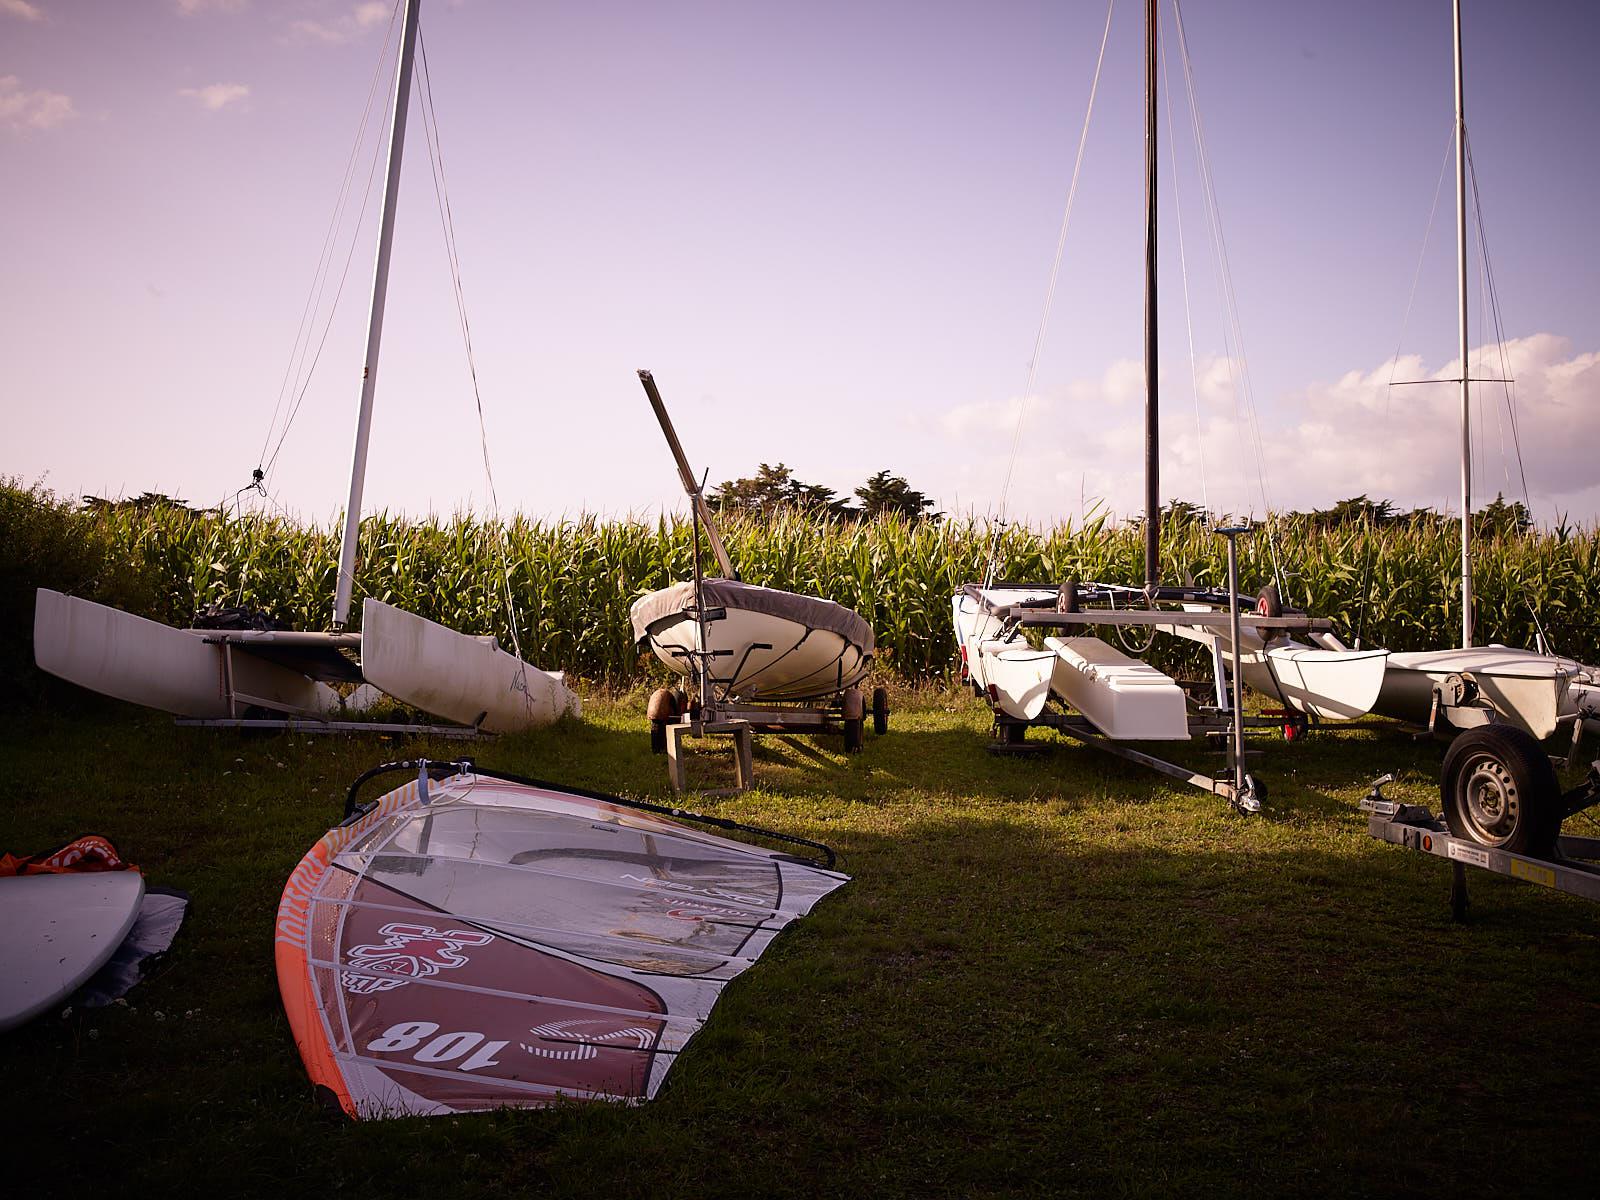 Club Nautique du Rohu - Le champ, possibilité de louer un emplacement pour son bateau